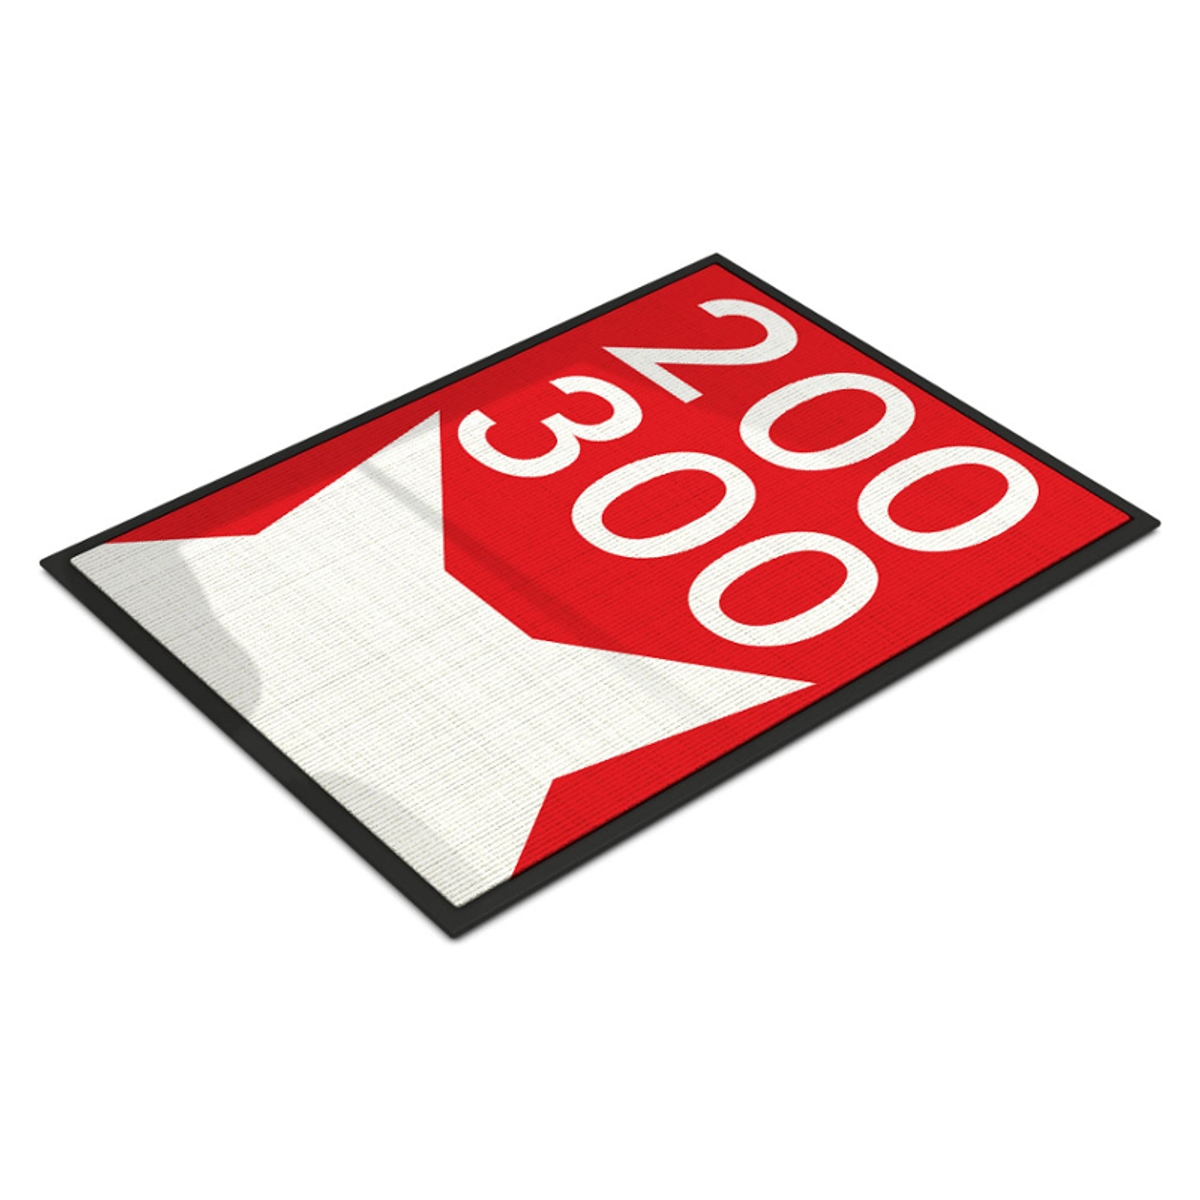 200 x 300 cm | Fußmatte selbst gestalten, bedruckt, rutschfest & waschbar